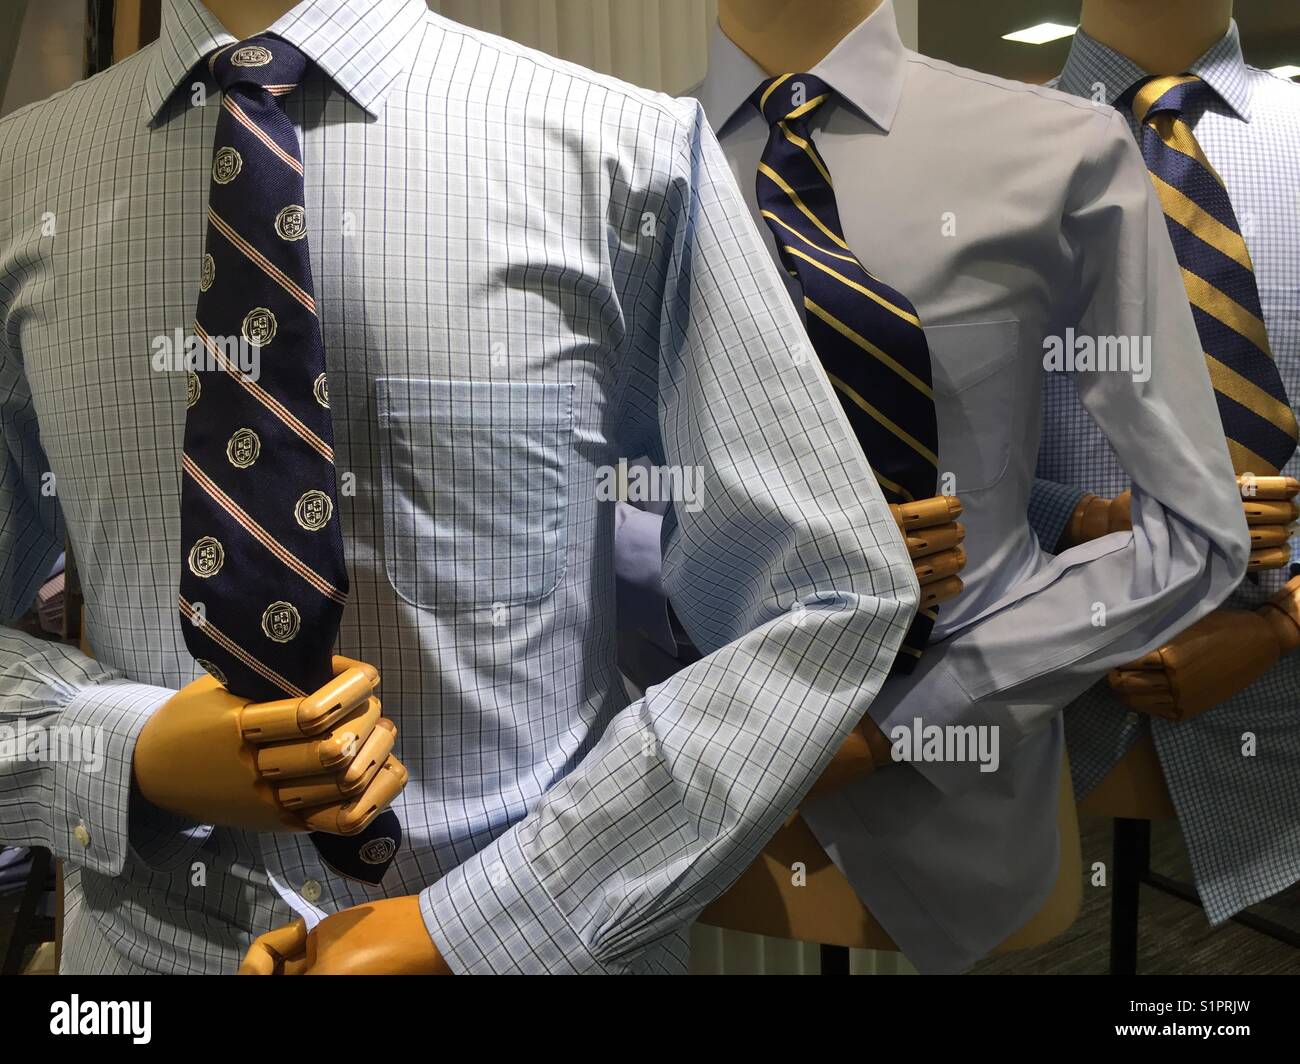 Department store affichage des hommes chemises et cravates,USA Banque D'Images